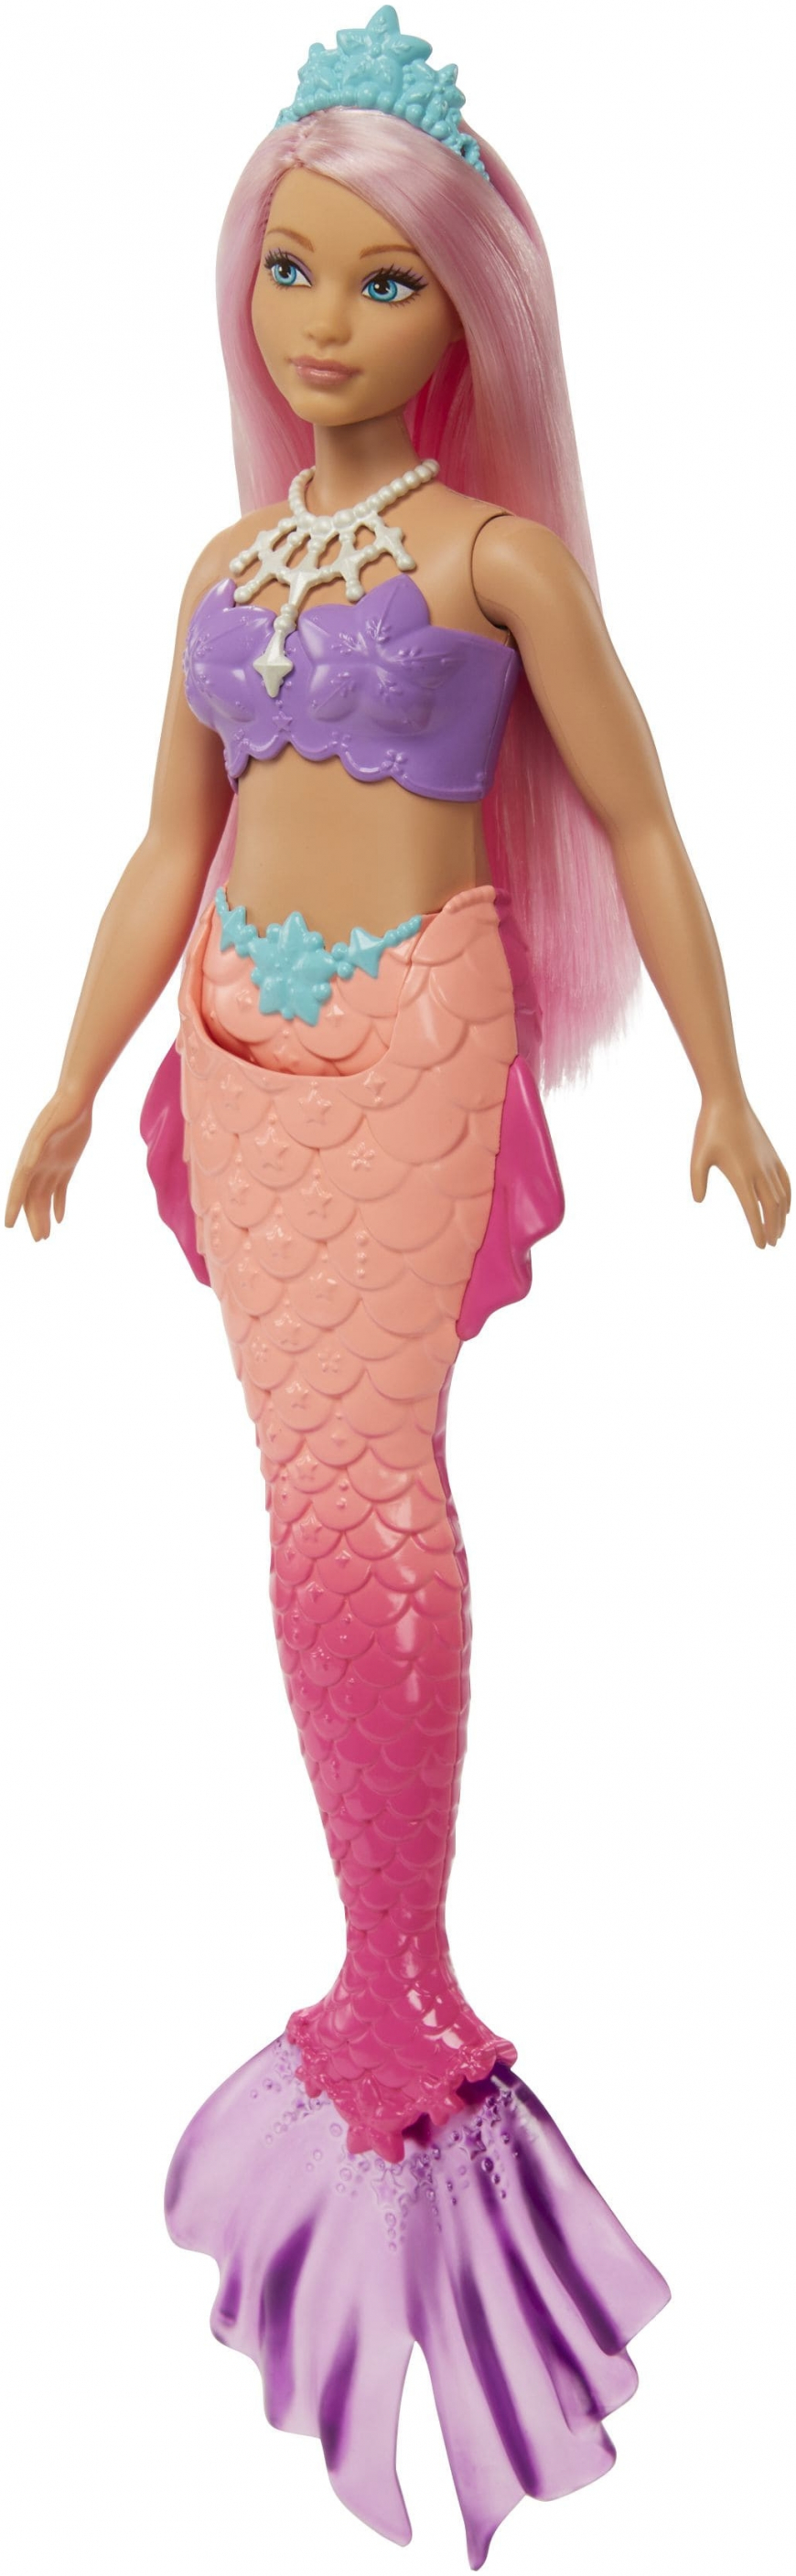 Barbie Dreamtopia Mermaid doll HGR09